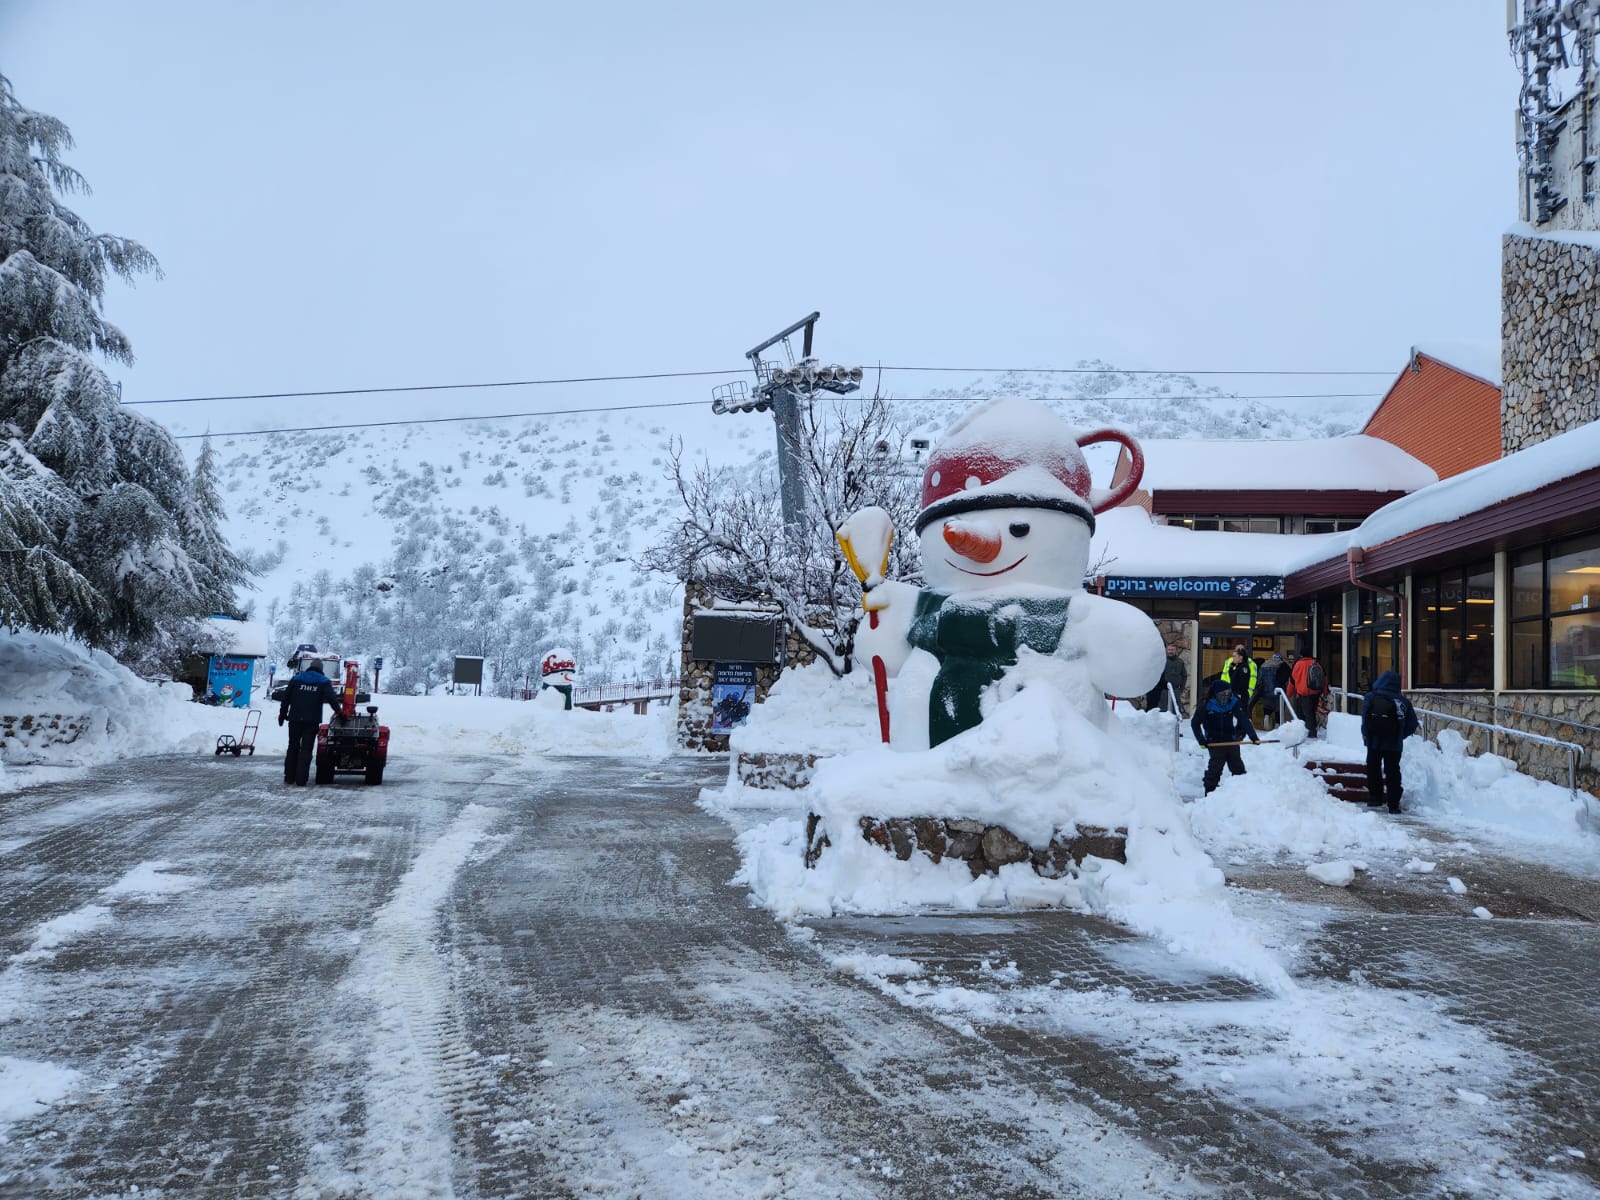 אתר החרמון נפתח הבוקר למבקרים ולגולשי הסקי